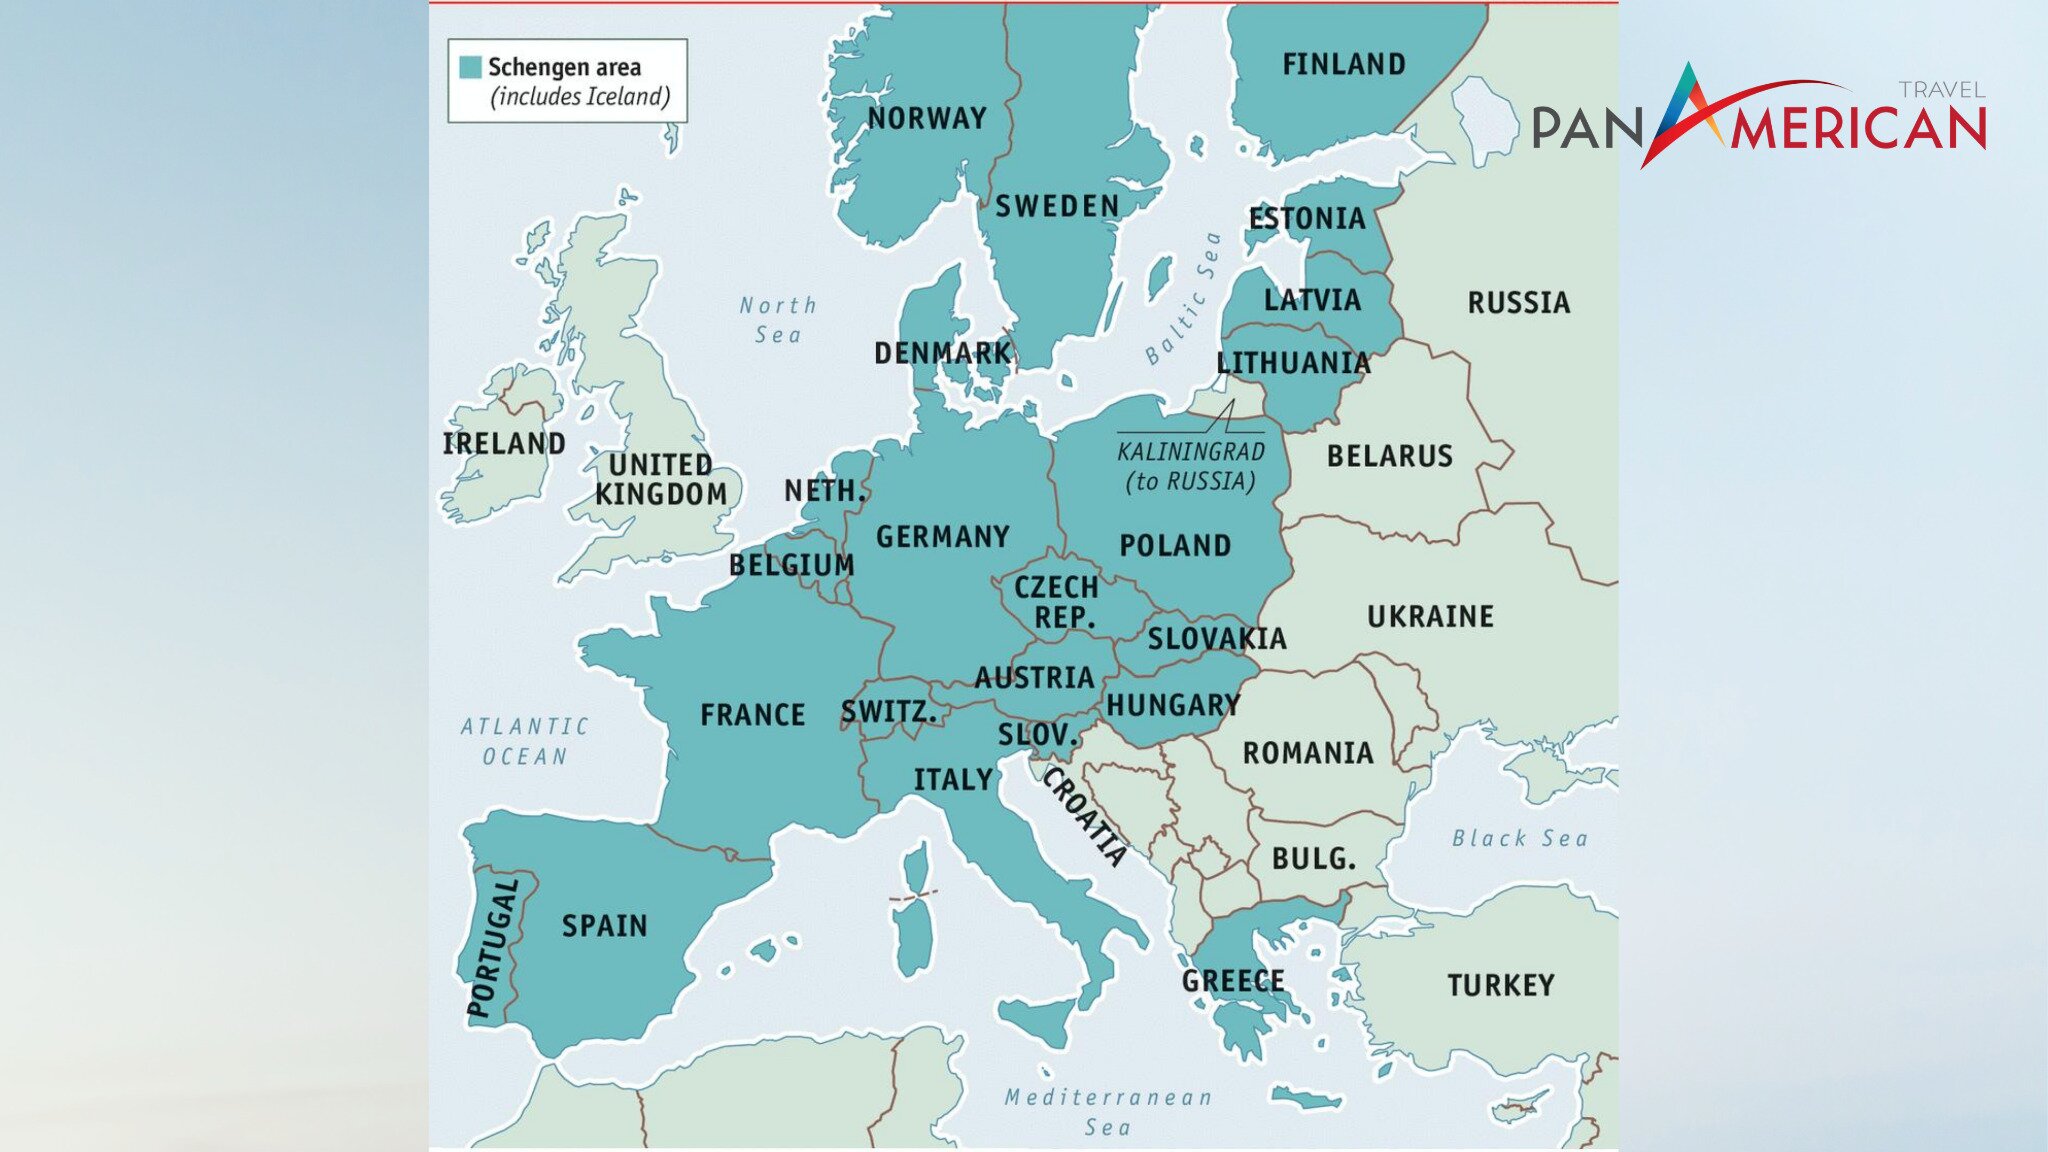 Visa Schengen chỉ cho phép nhập cảnh vào 26 nước thuộc khối này